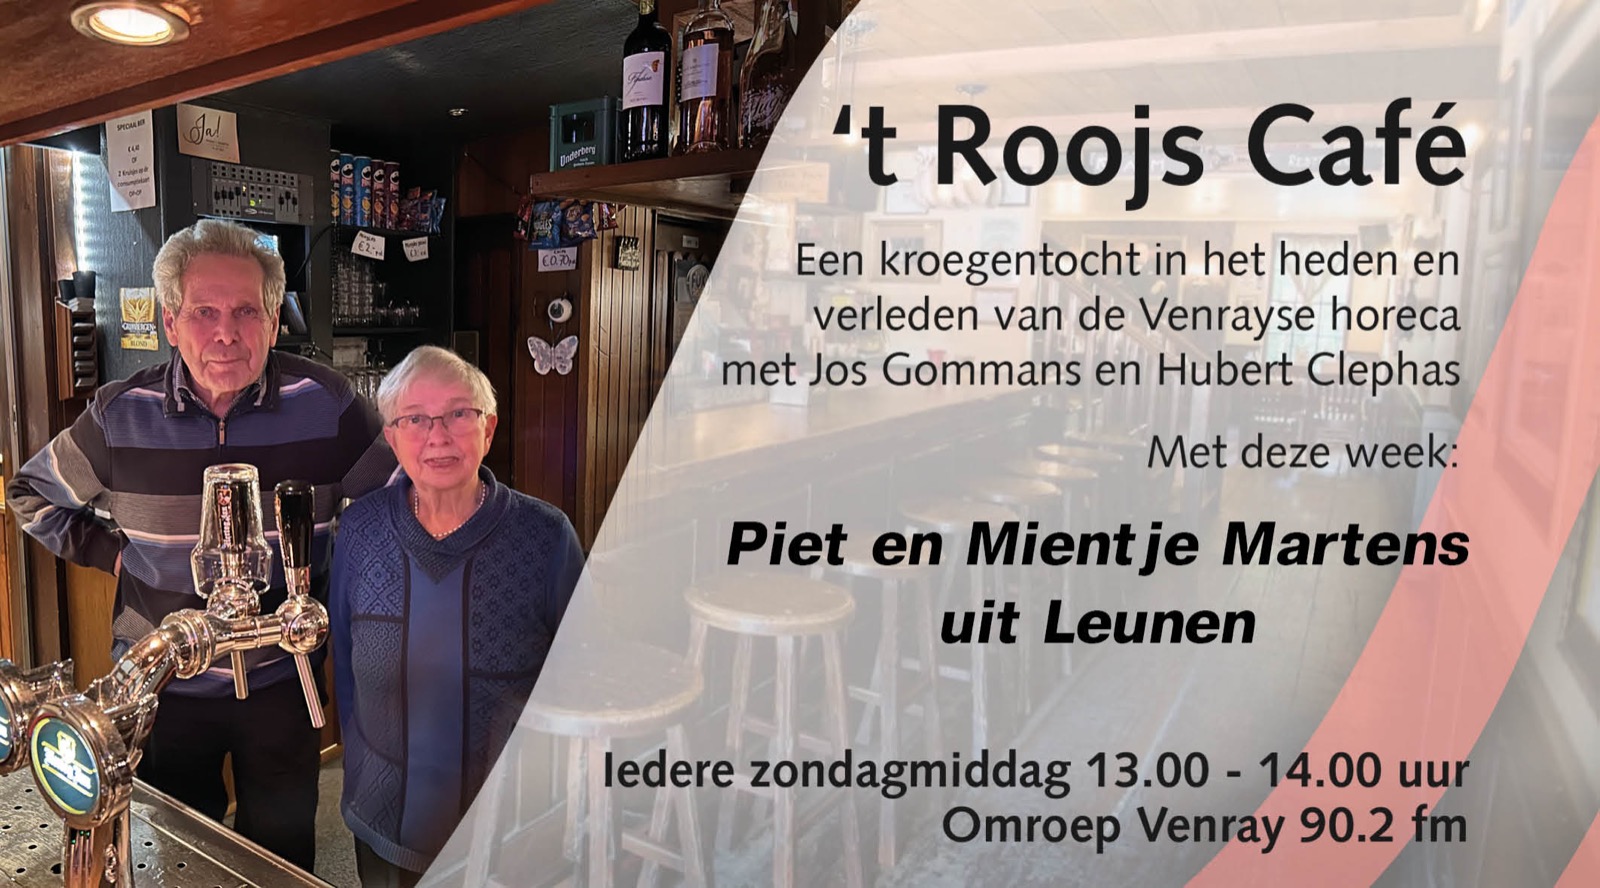 't Roojs Cafe Piet en Mientje Martens uit Leunen